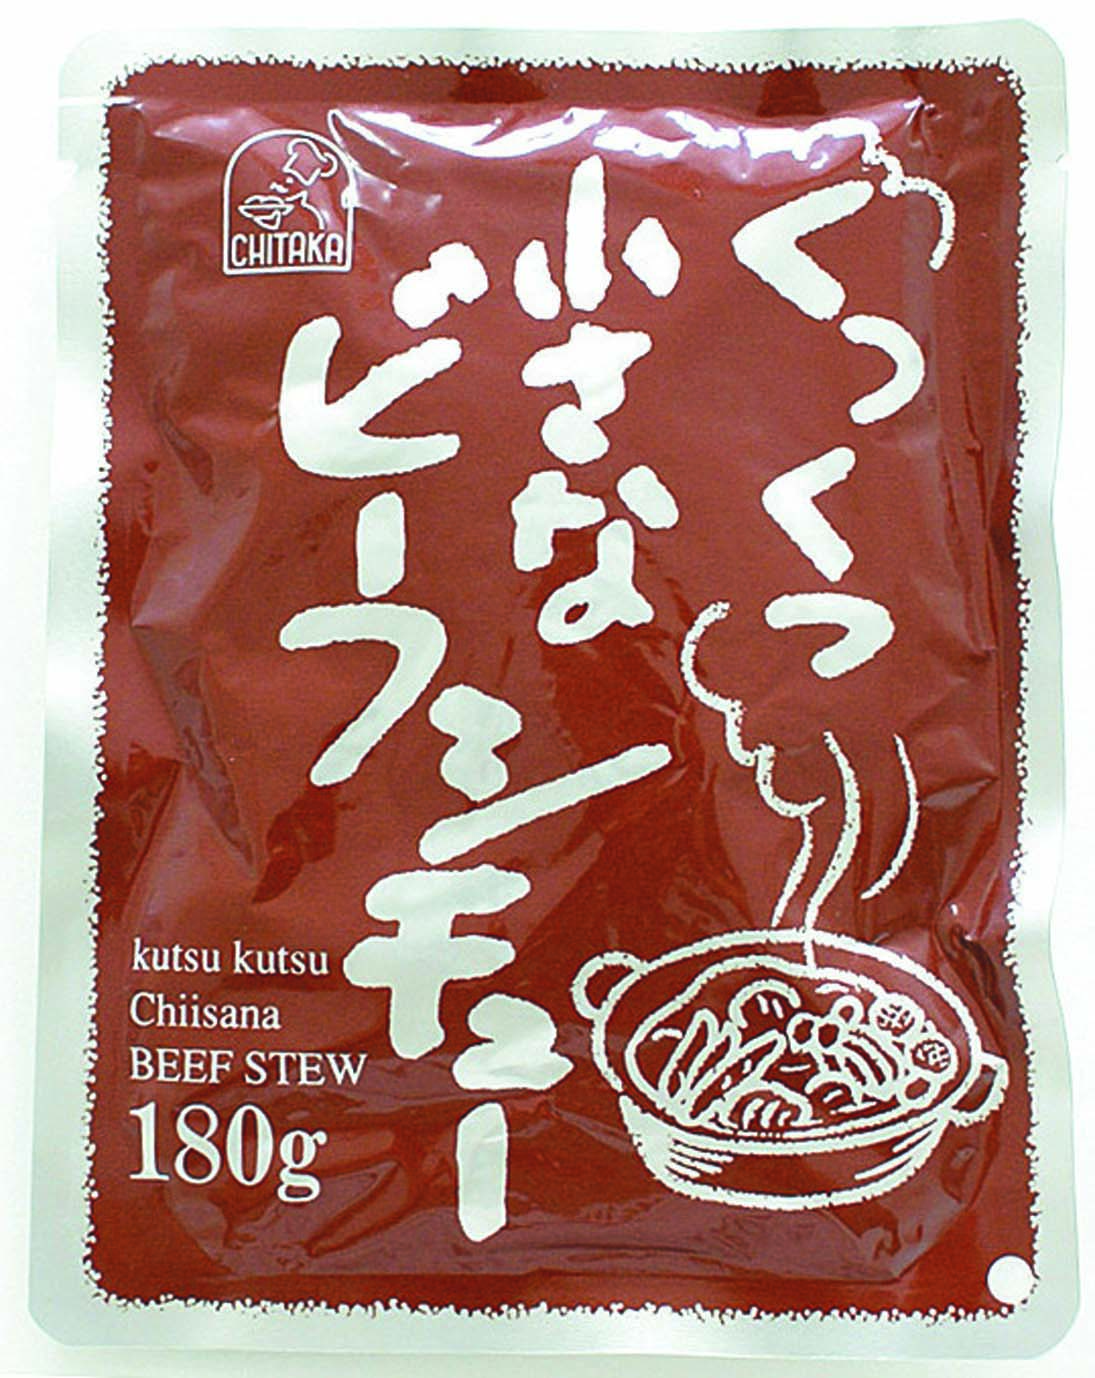 宮島醤油)くつくつ小さなビーフシチュー1食180g